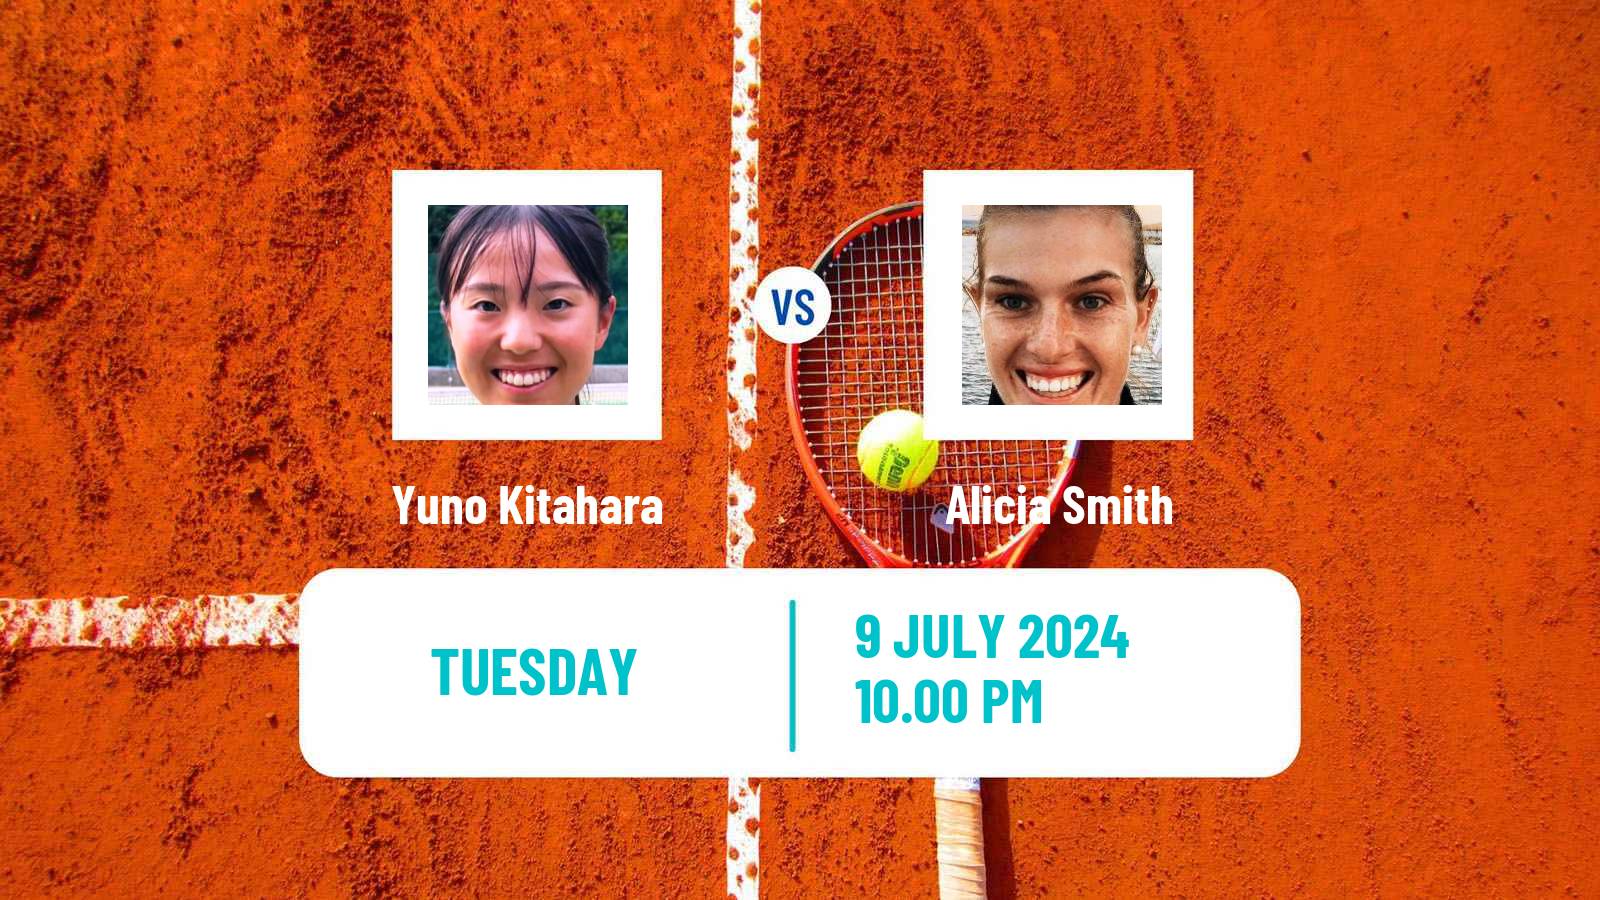 Tennis ITF W15 Nakhon Si Thammarat 3 Women Yuno Kitahara - Alicia Smith